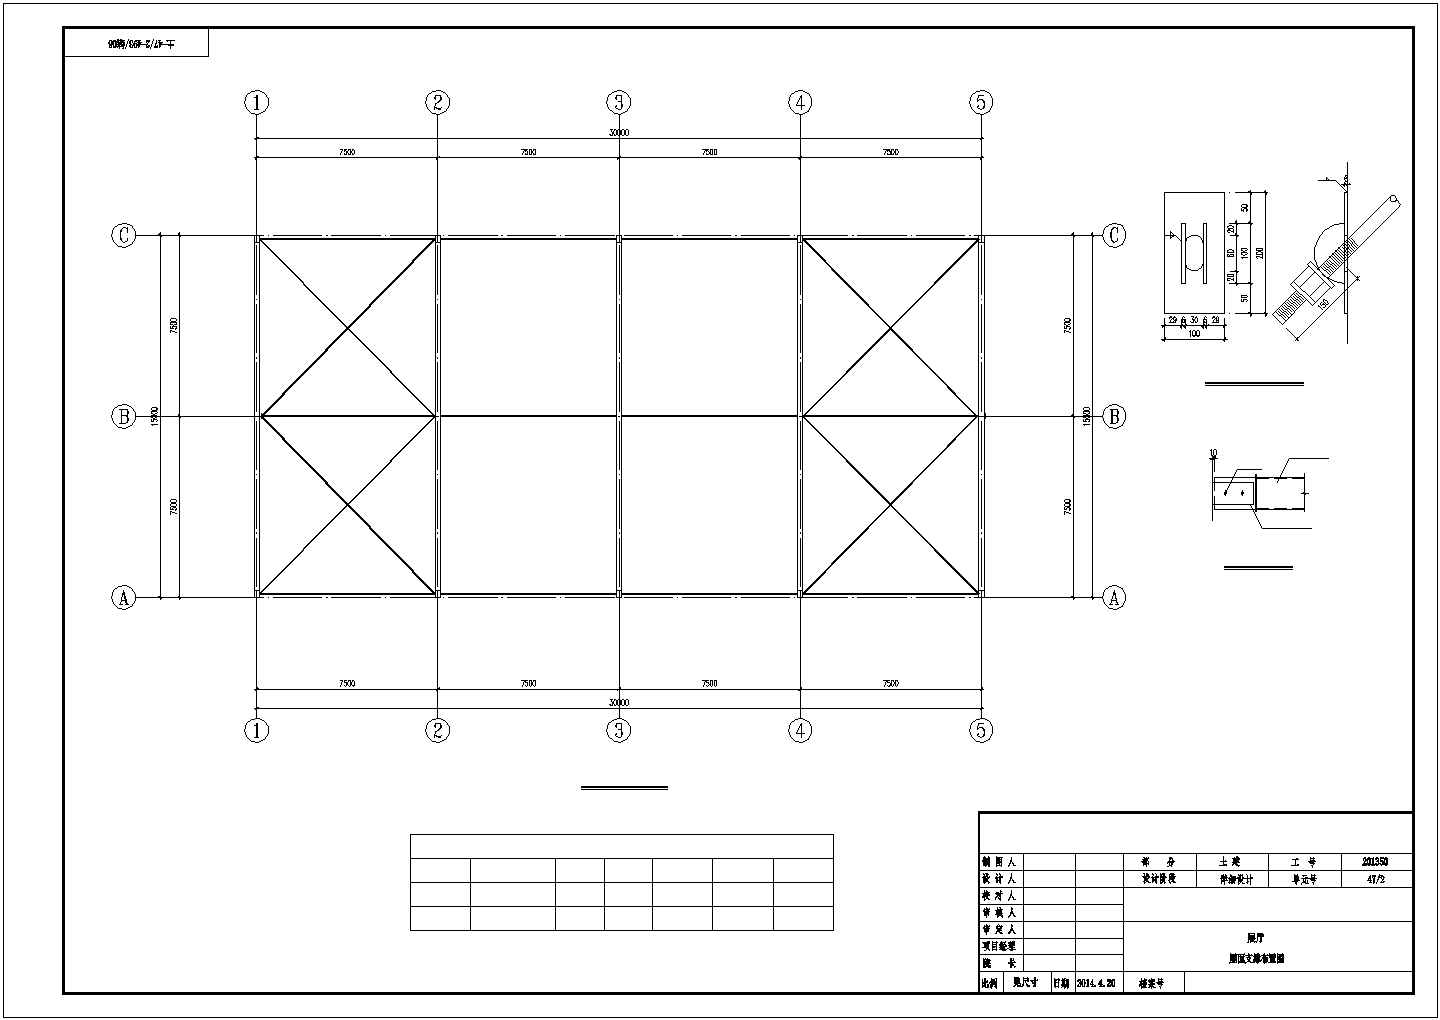 钢结构工程量计算规则入门精讲(附钢结构展厅施工图)